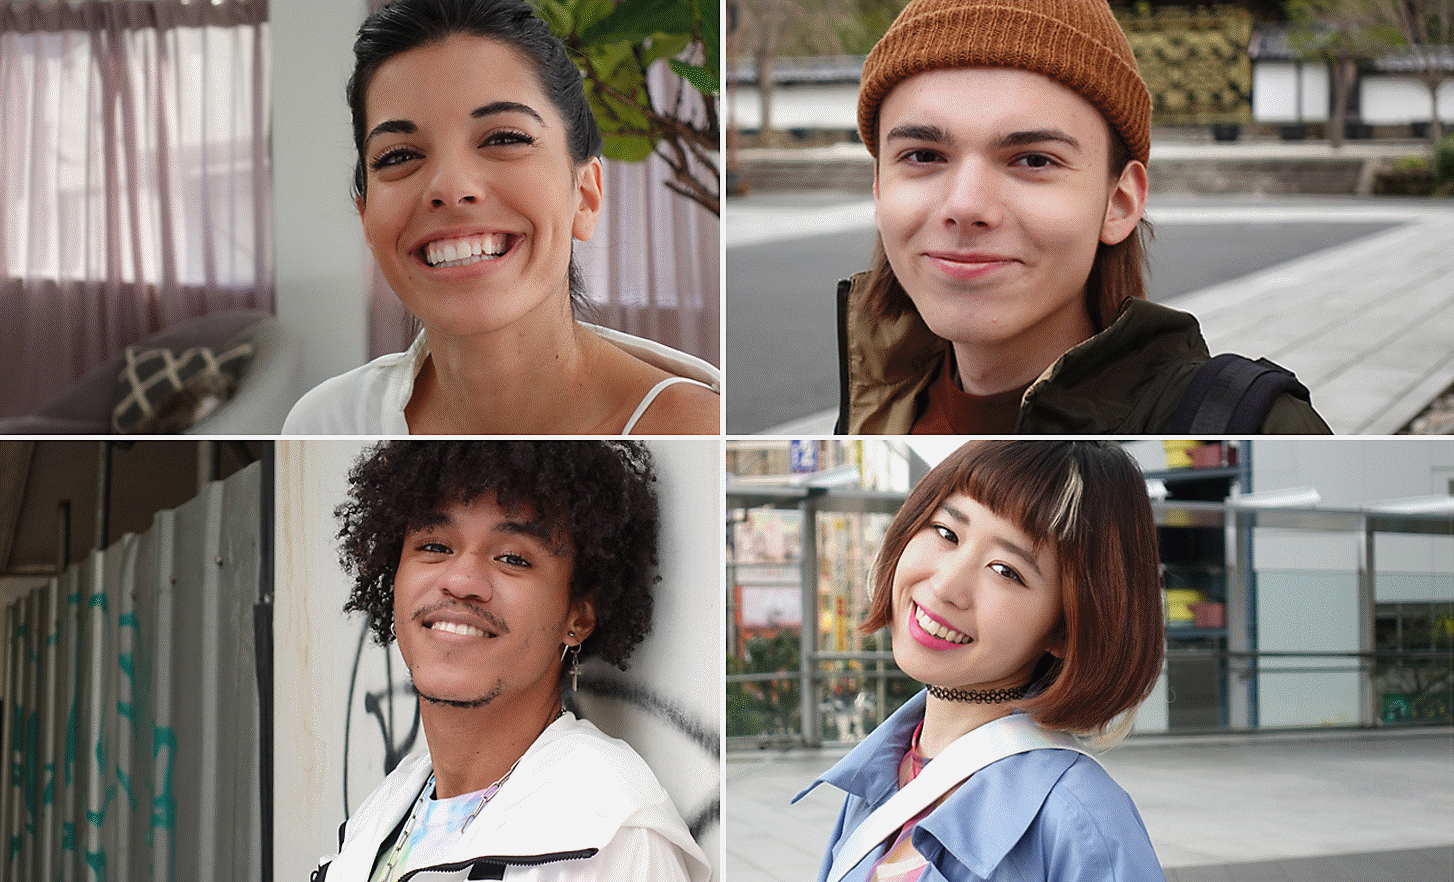 Porträts vier lächelnder Personen